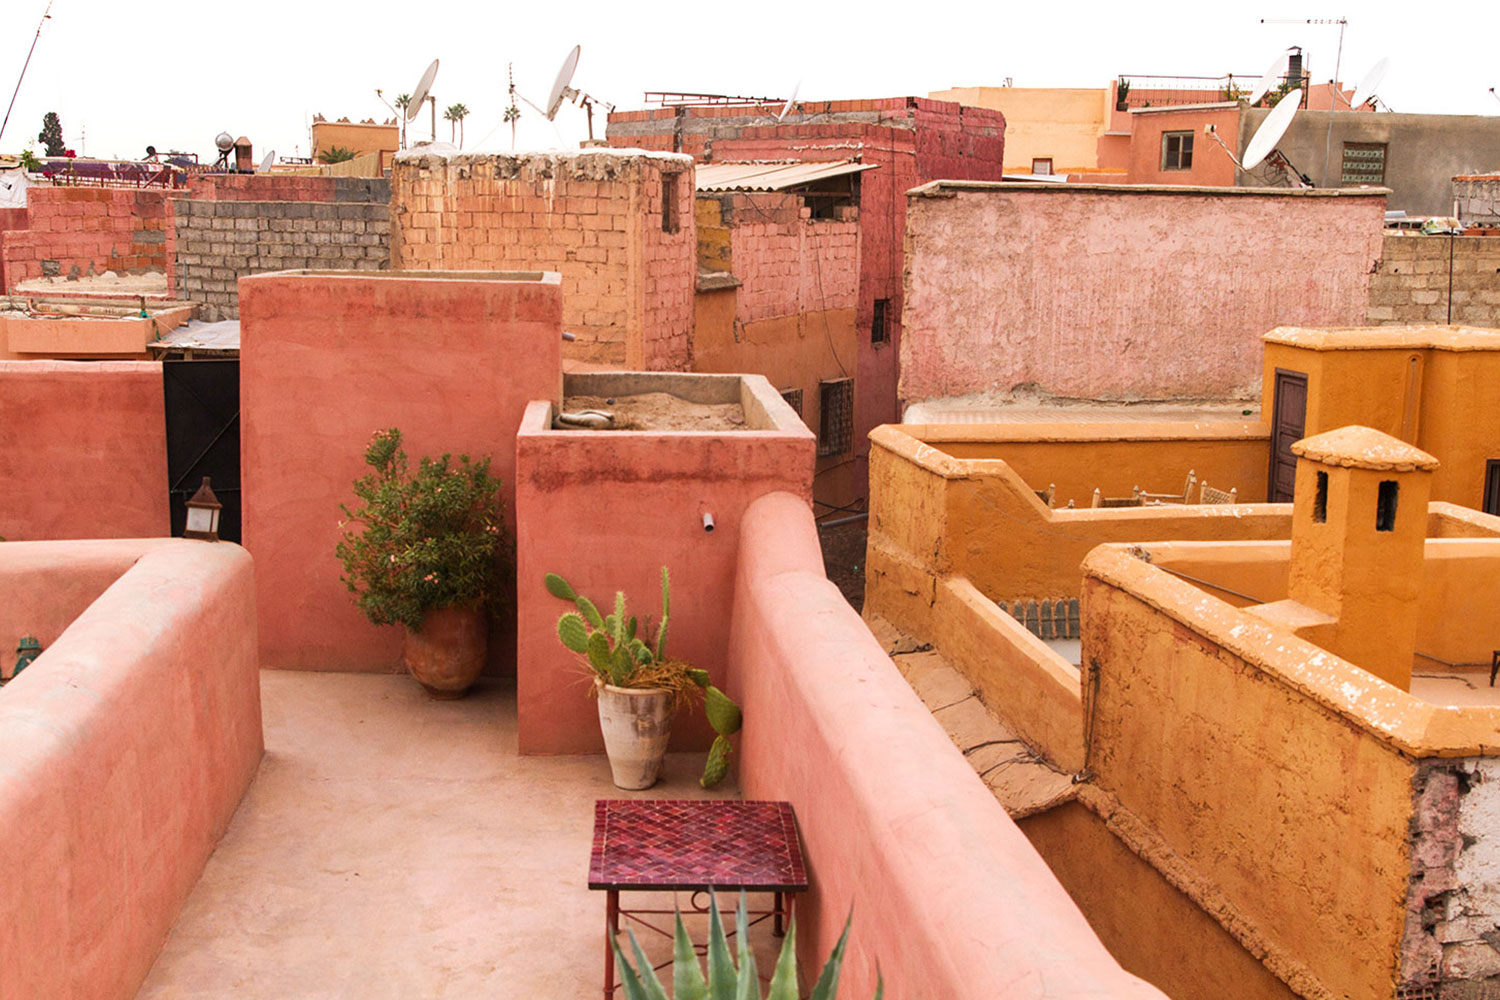 01_NOMNOM_Reise_Marrakech.jpg